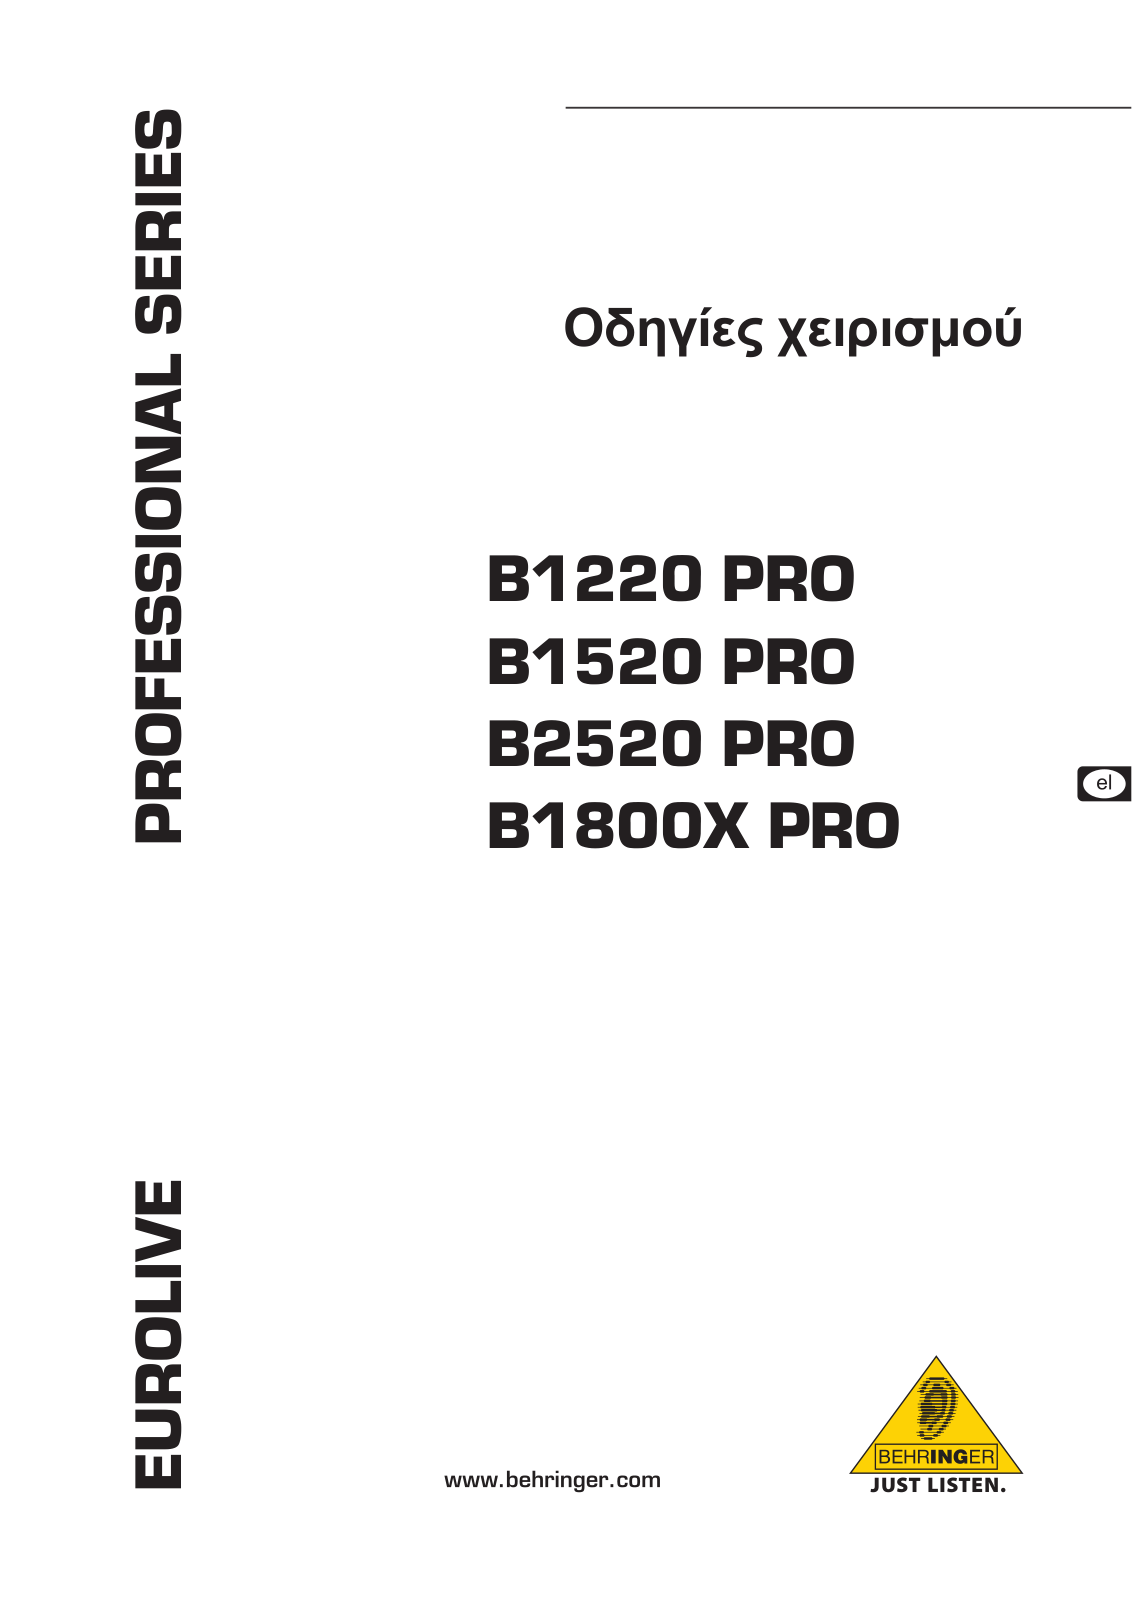 Behringer B1520 PRO, B2520 PRO, B1800X PRO, B1220 PRO Manual